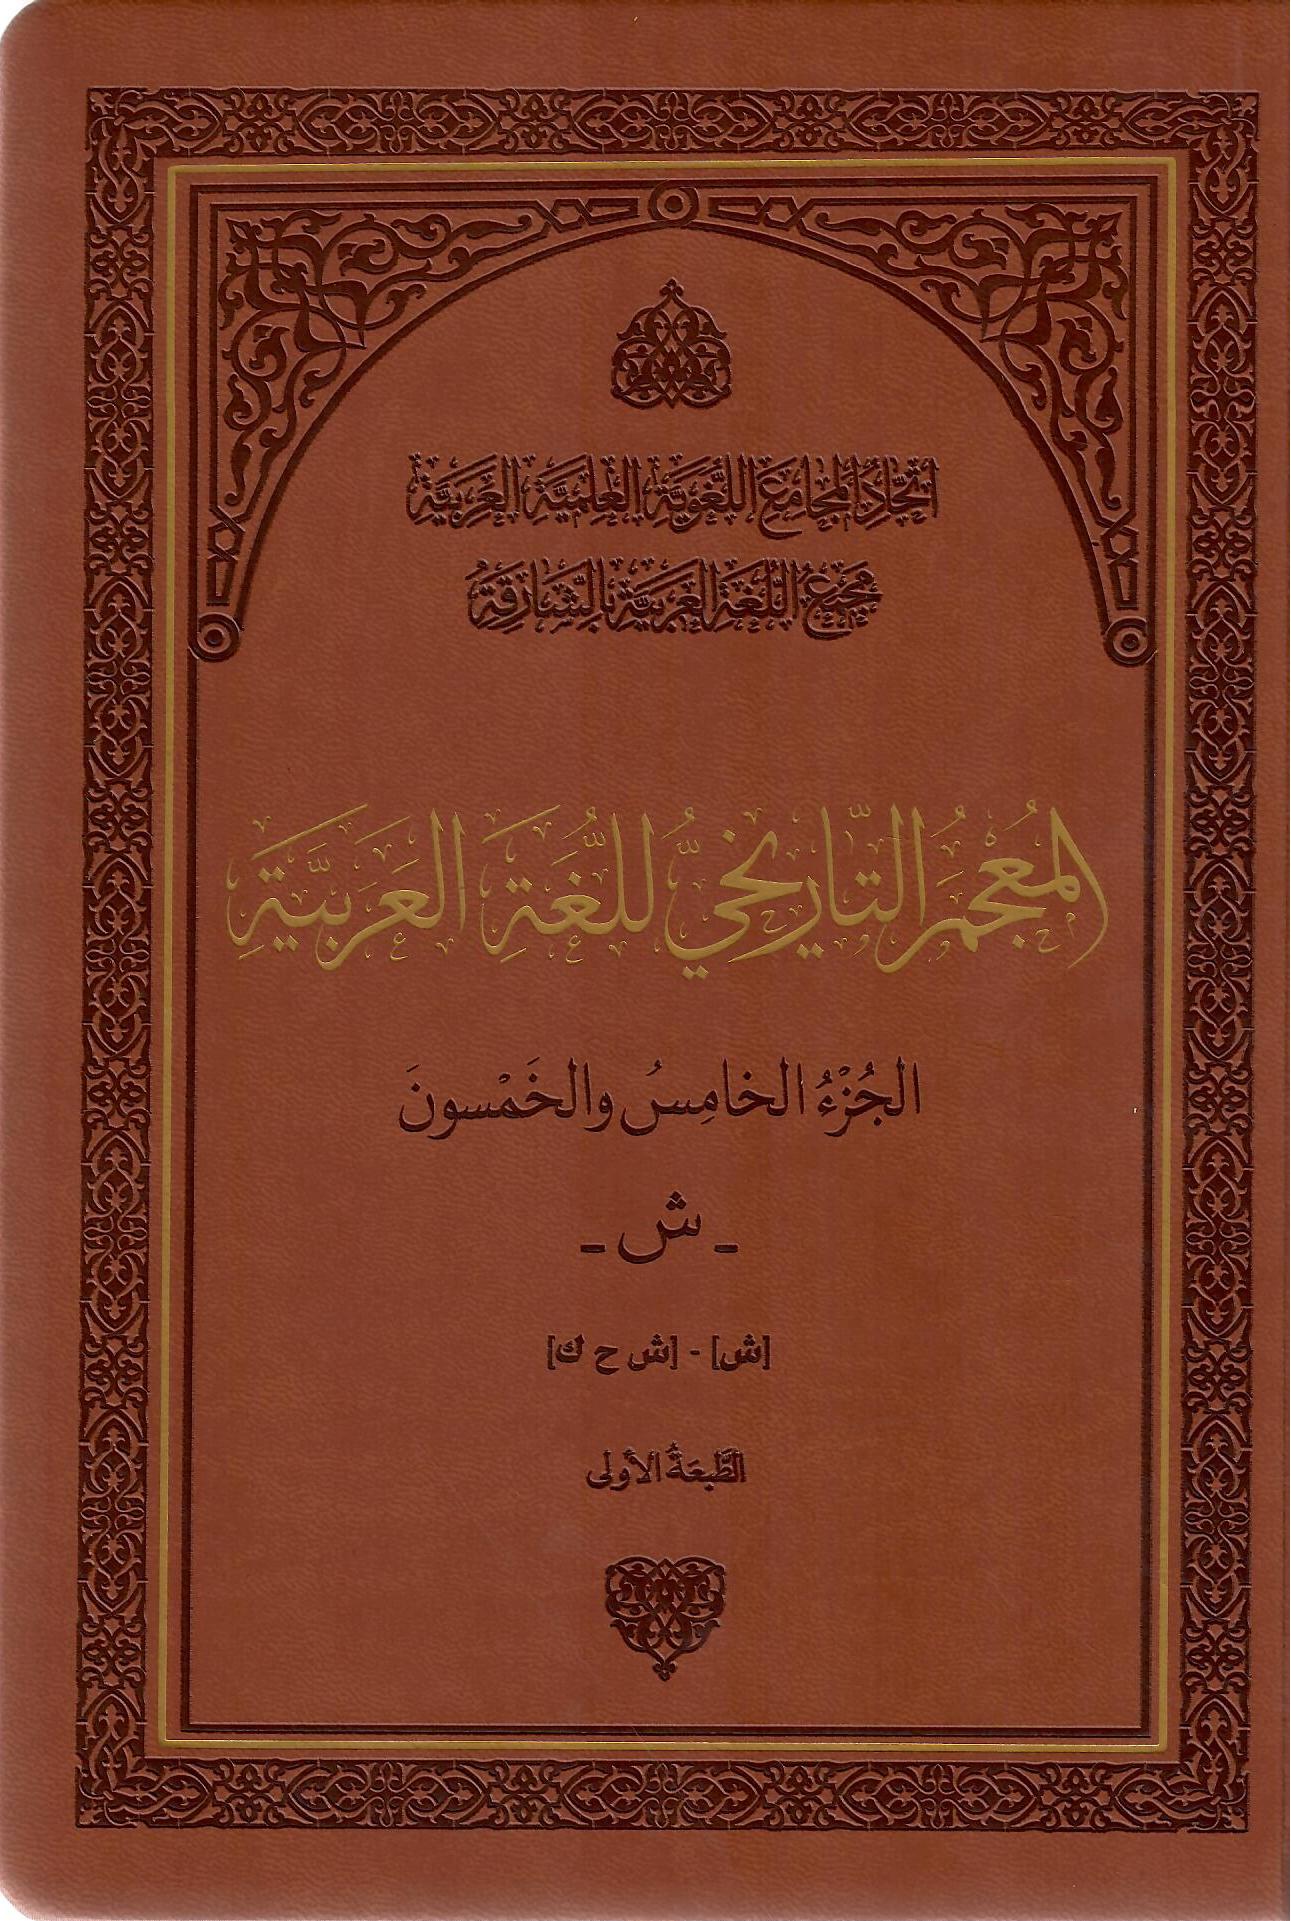 المعجم التاريخي للغة العربية الجزء الخامس والخمسون